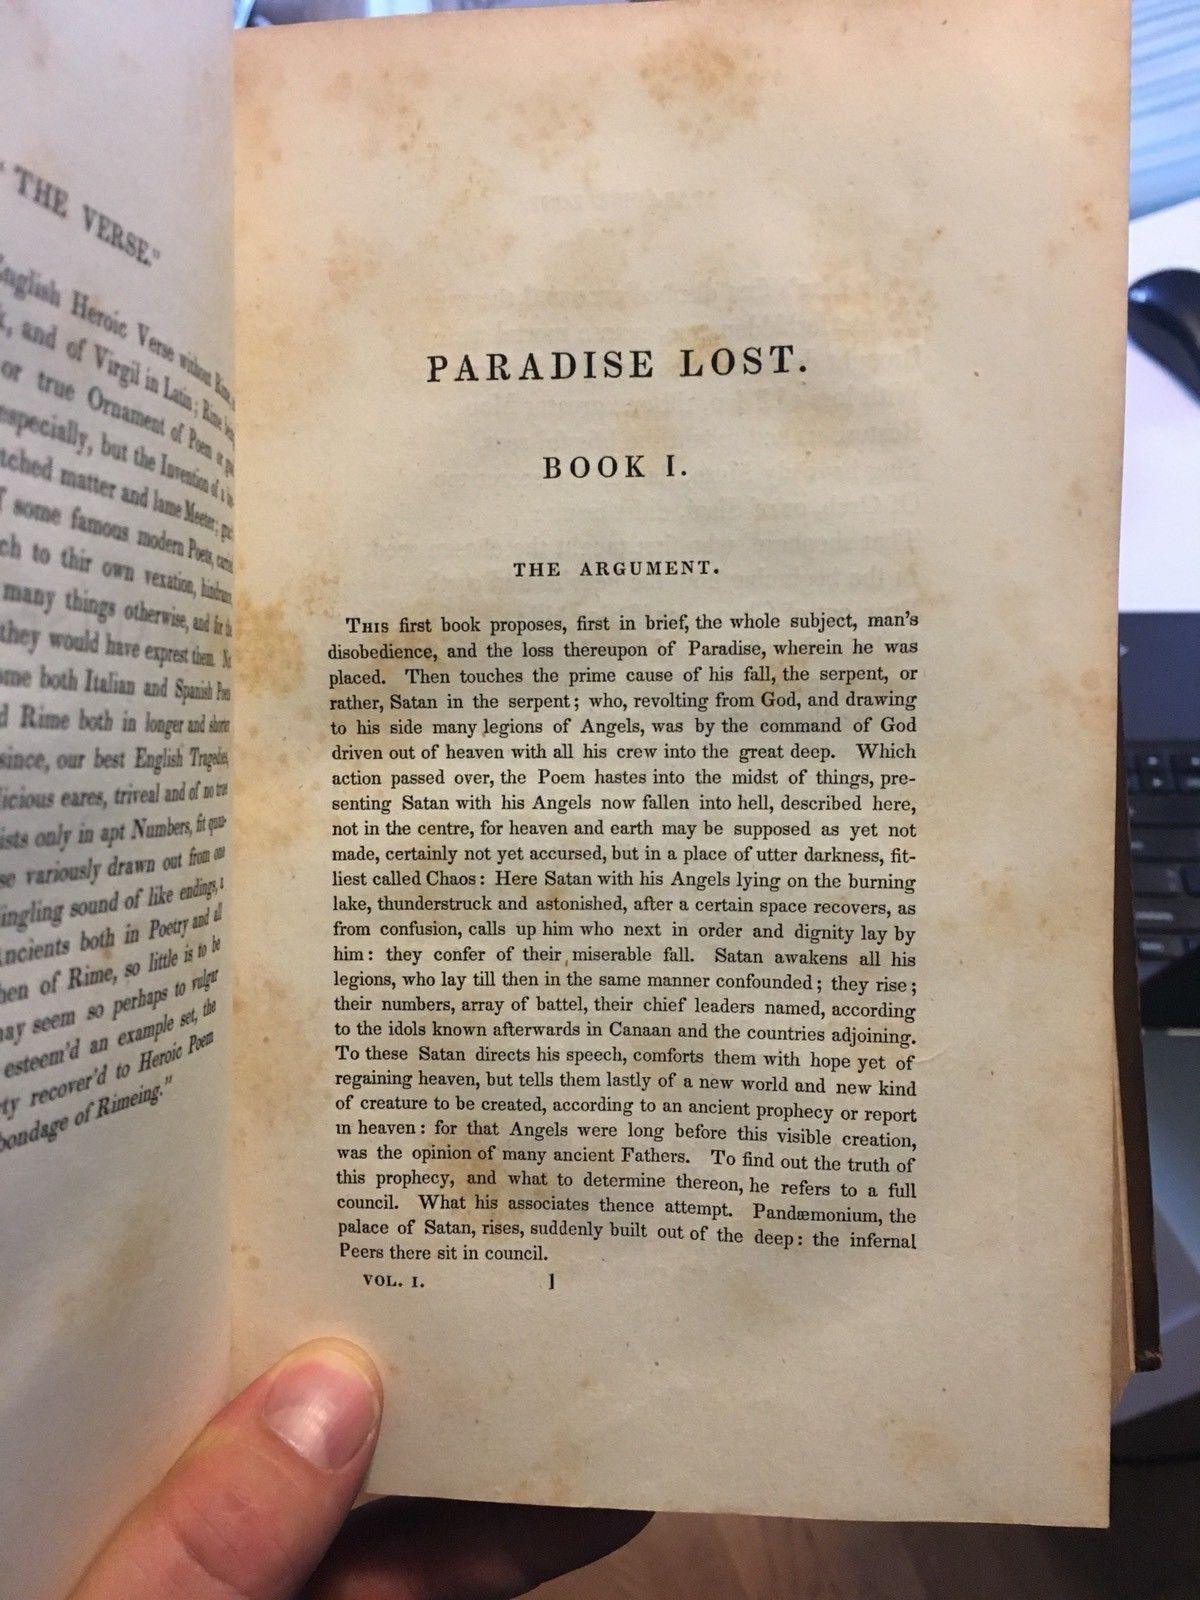 MILTON, John "The Poetical Works Of John Milton" [Hilliard, Gray & Co, 1834] - Buzz Bookstore